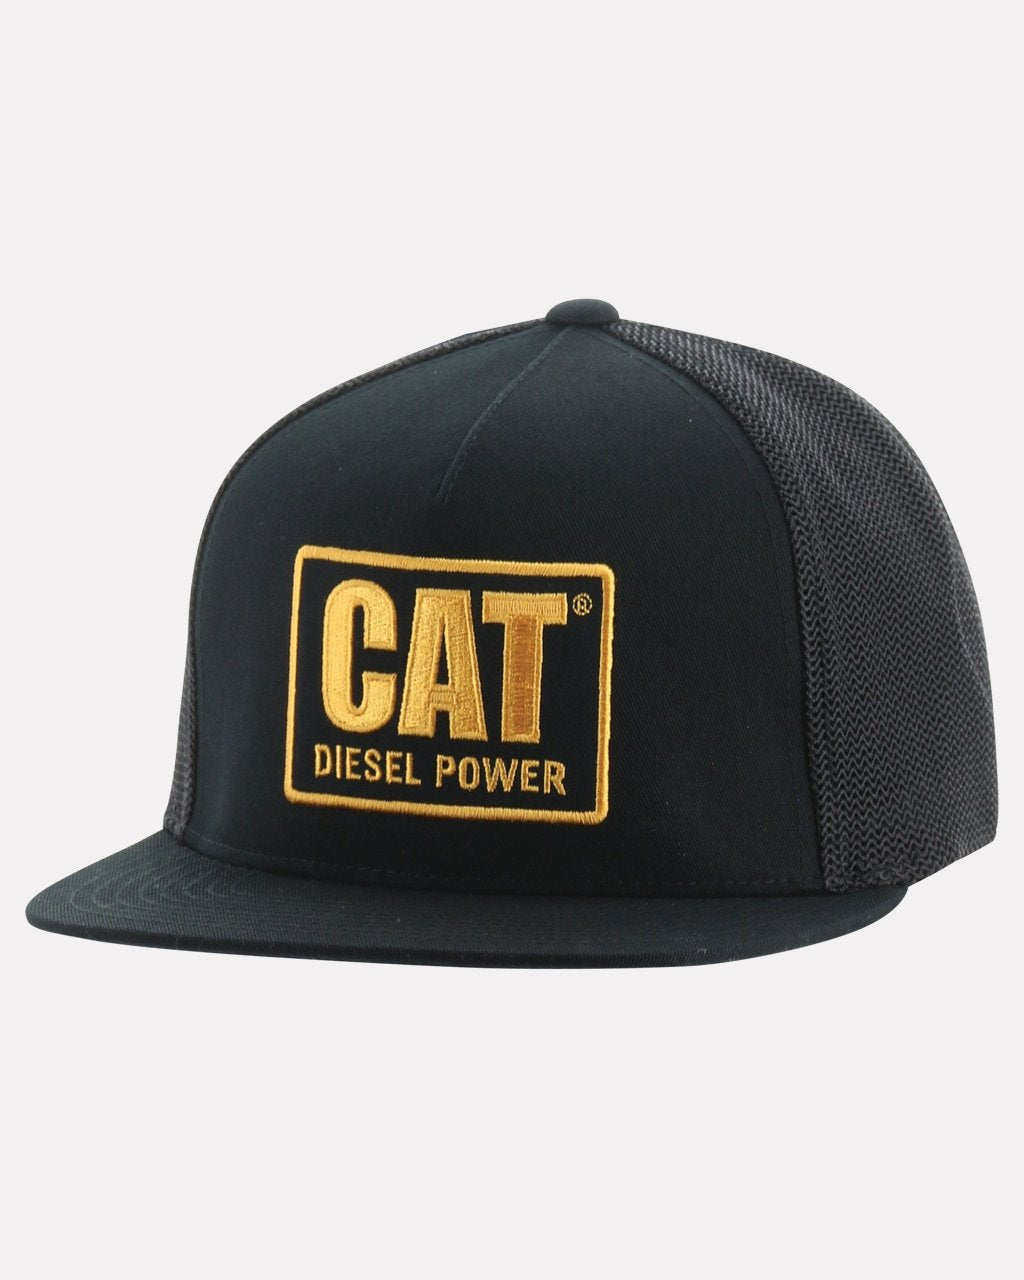 CAT Men&#39;s Diesel Power Flat Bill Cap - Work World - Workwear, Work Boots, Safety Gear